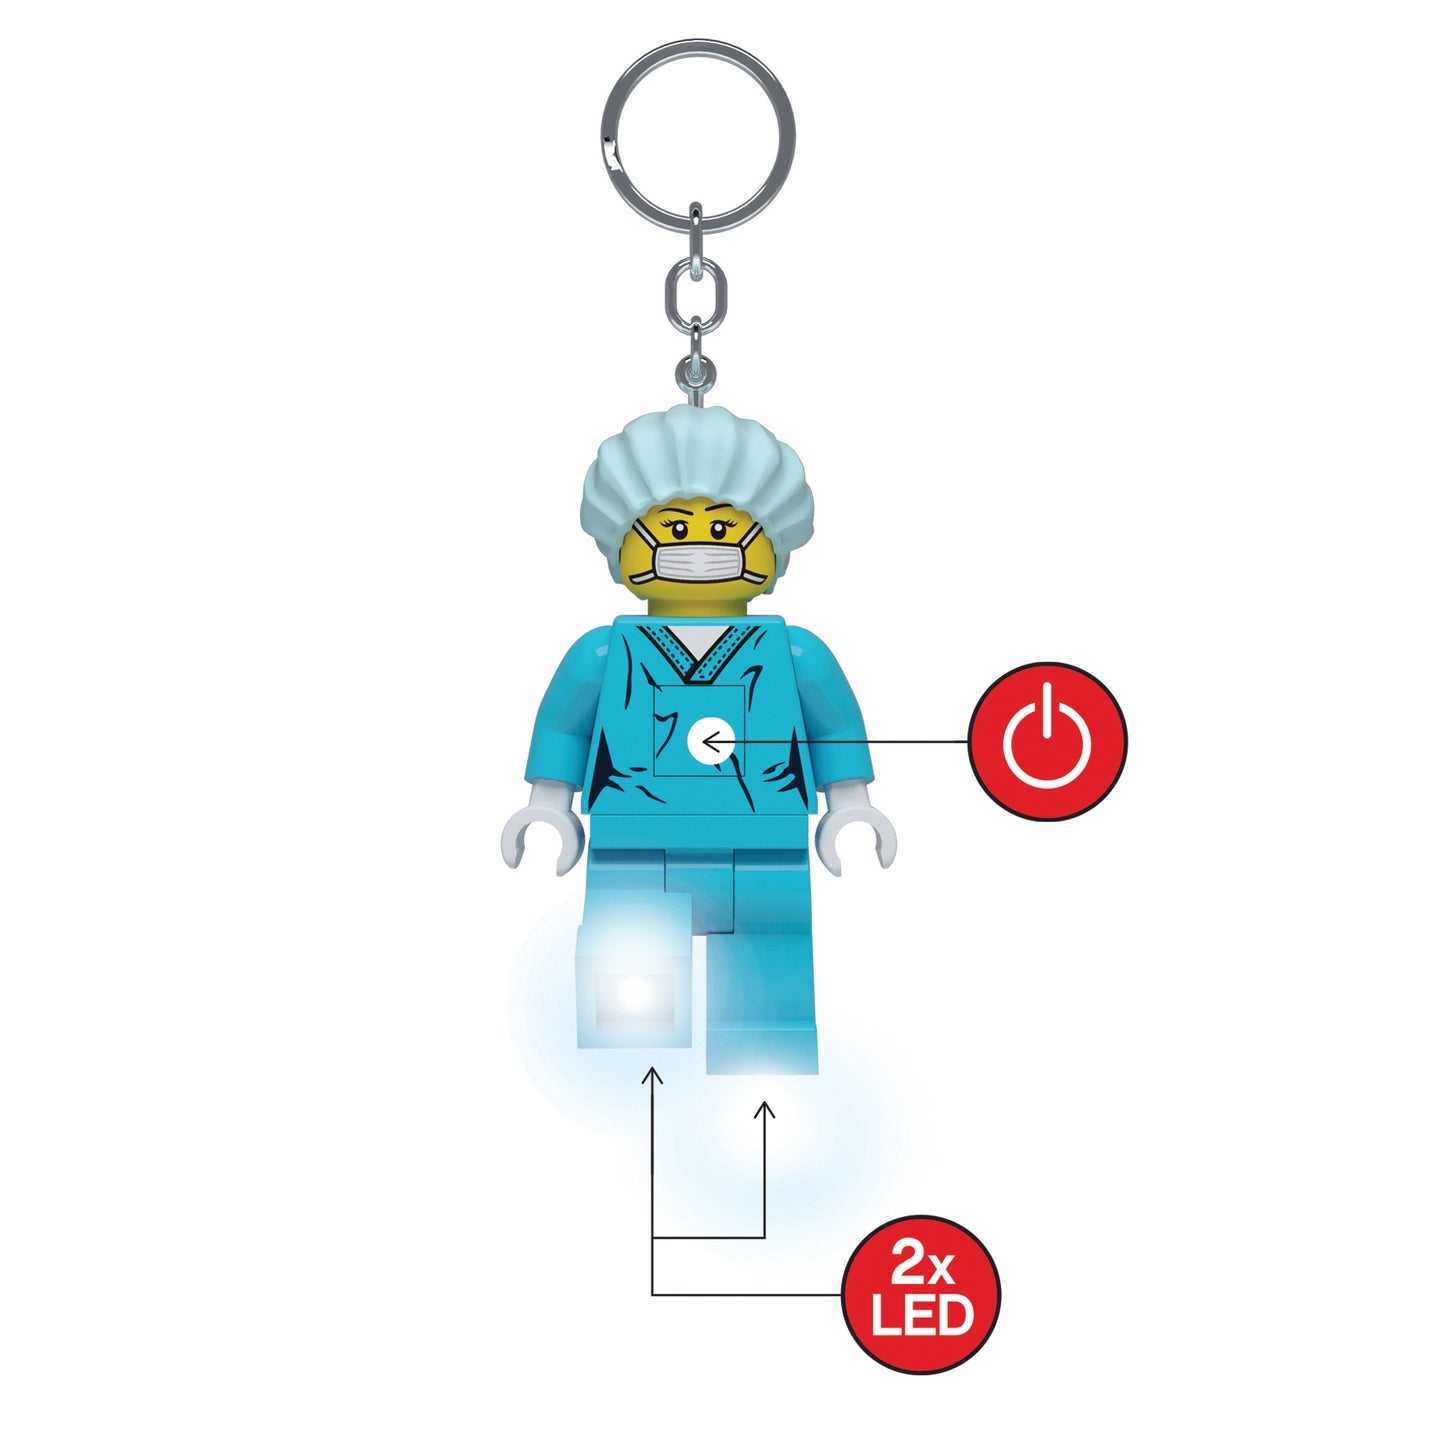 IQ 樂高 經典系列 外科醫生 LED發光鑰匙圈 (KE178)